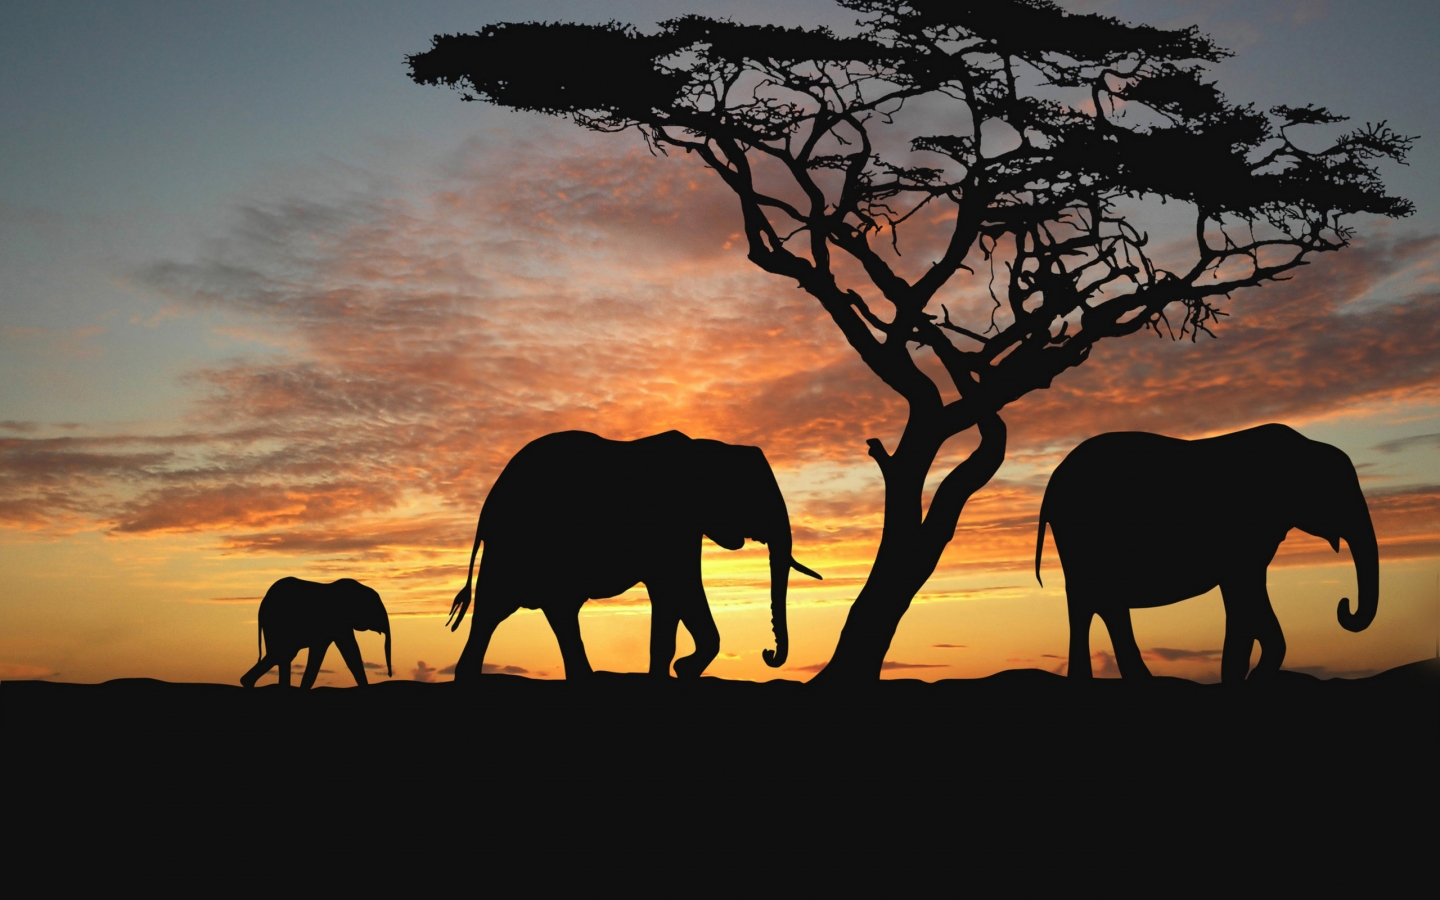 Elephants walking to westward for 1440 x 900 widescreen resolution